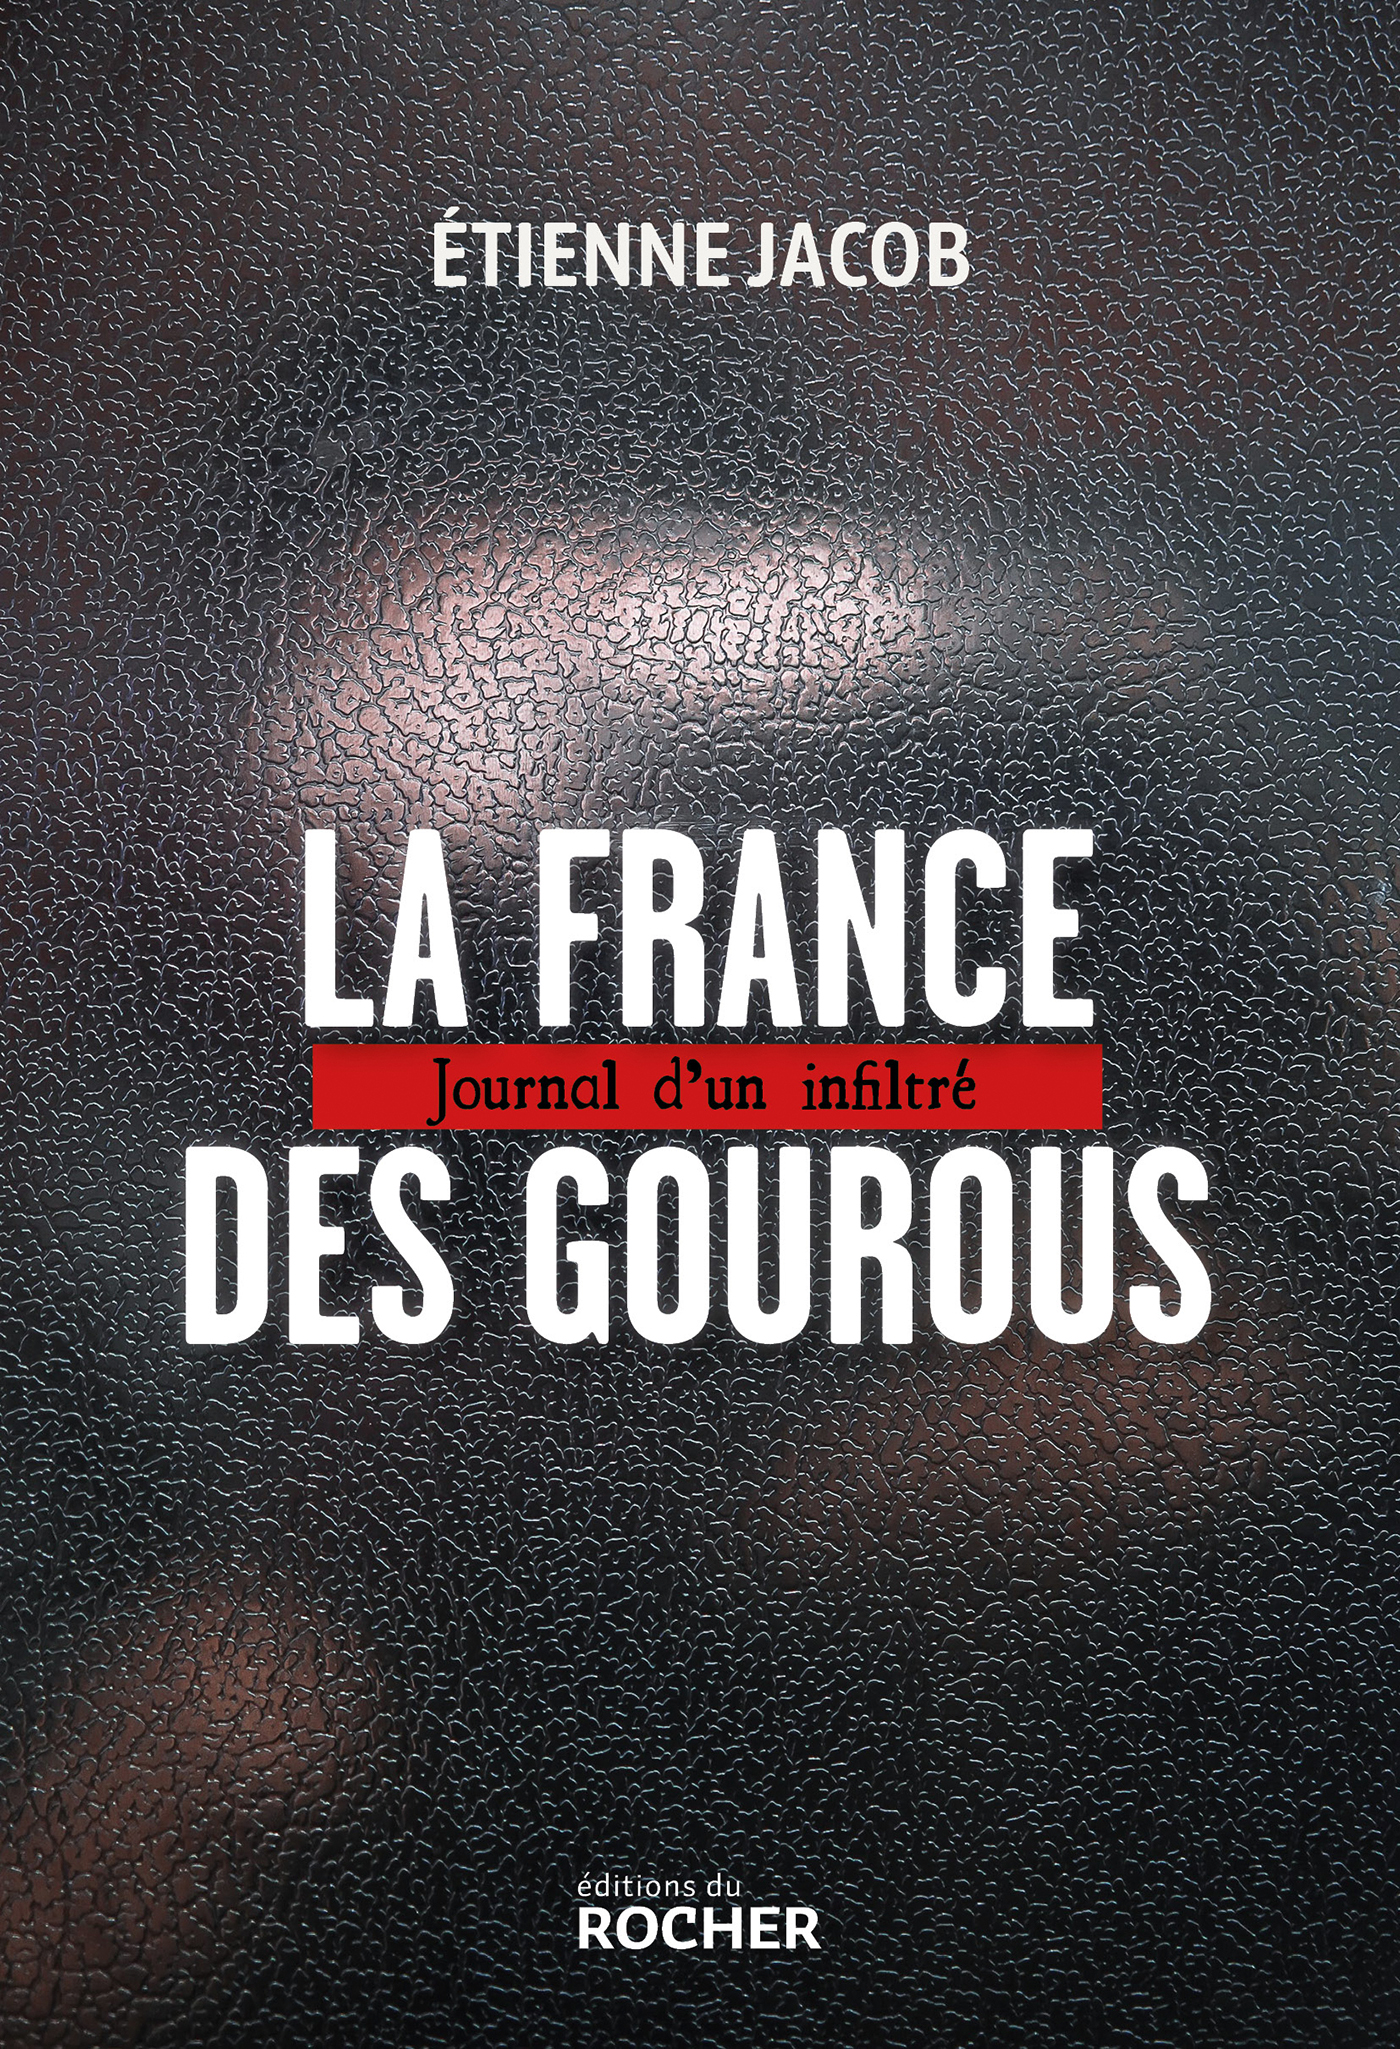 Étienne Jacob: La France des Gourous (Paperback, French language, Éditions du Rocher)